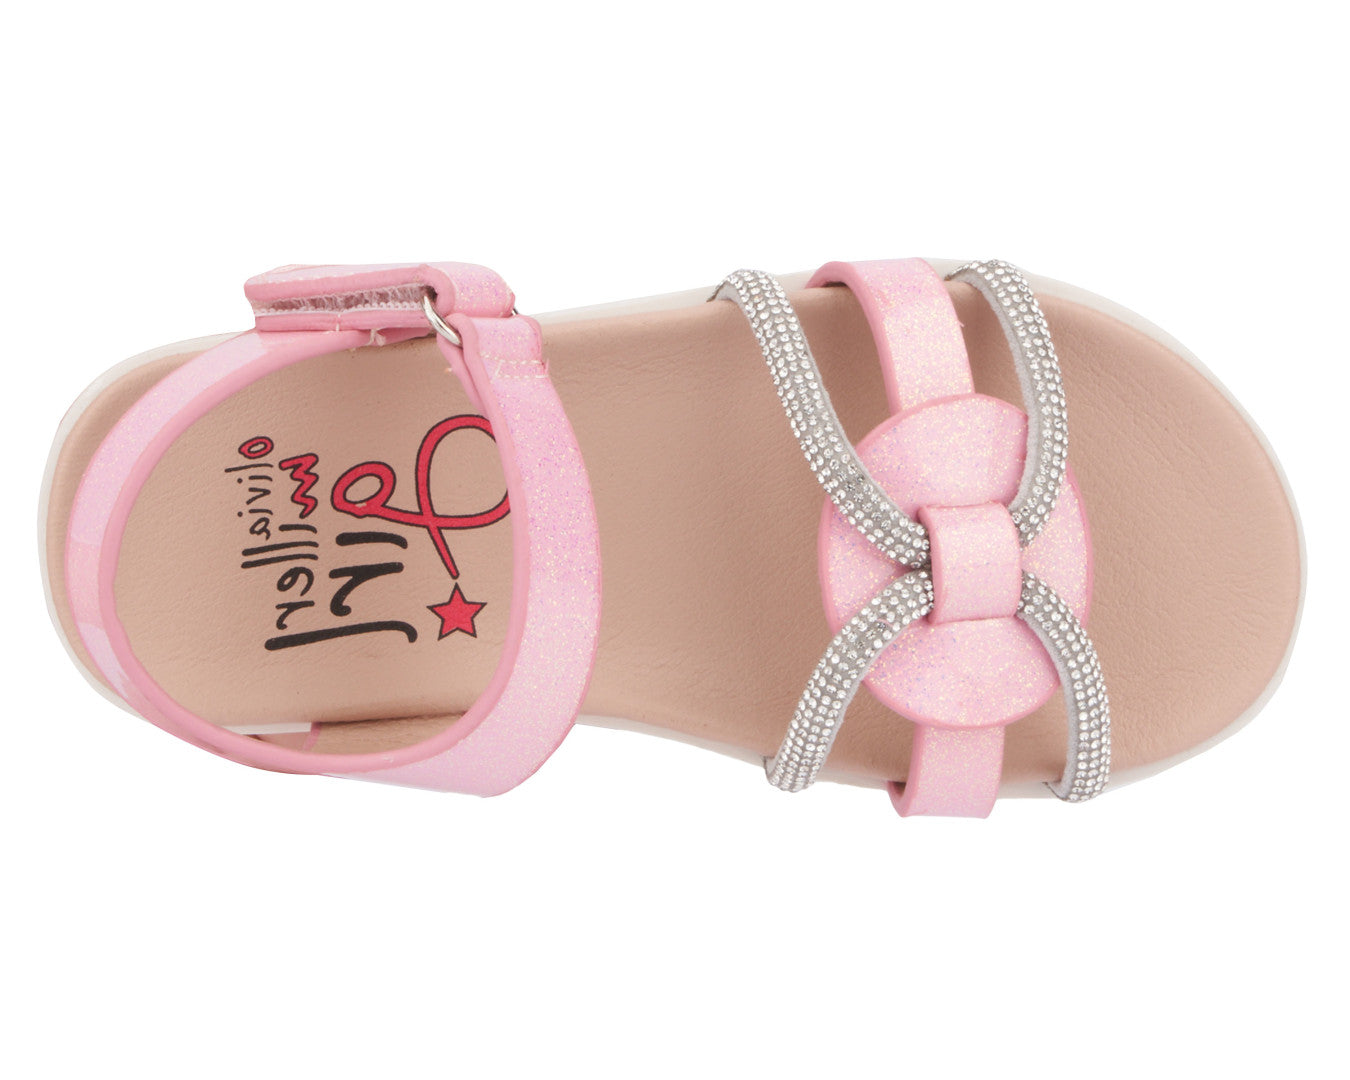 Girls' Toddler Lustre Flat Sandal